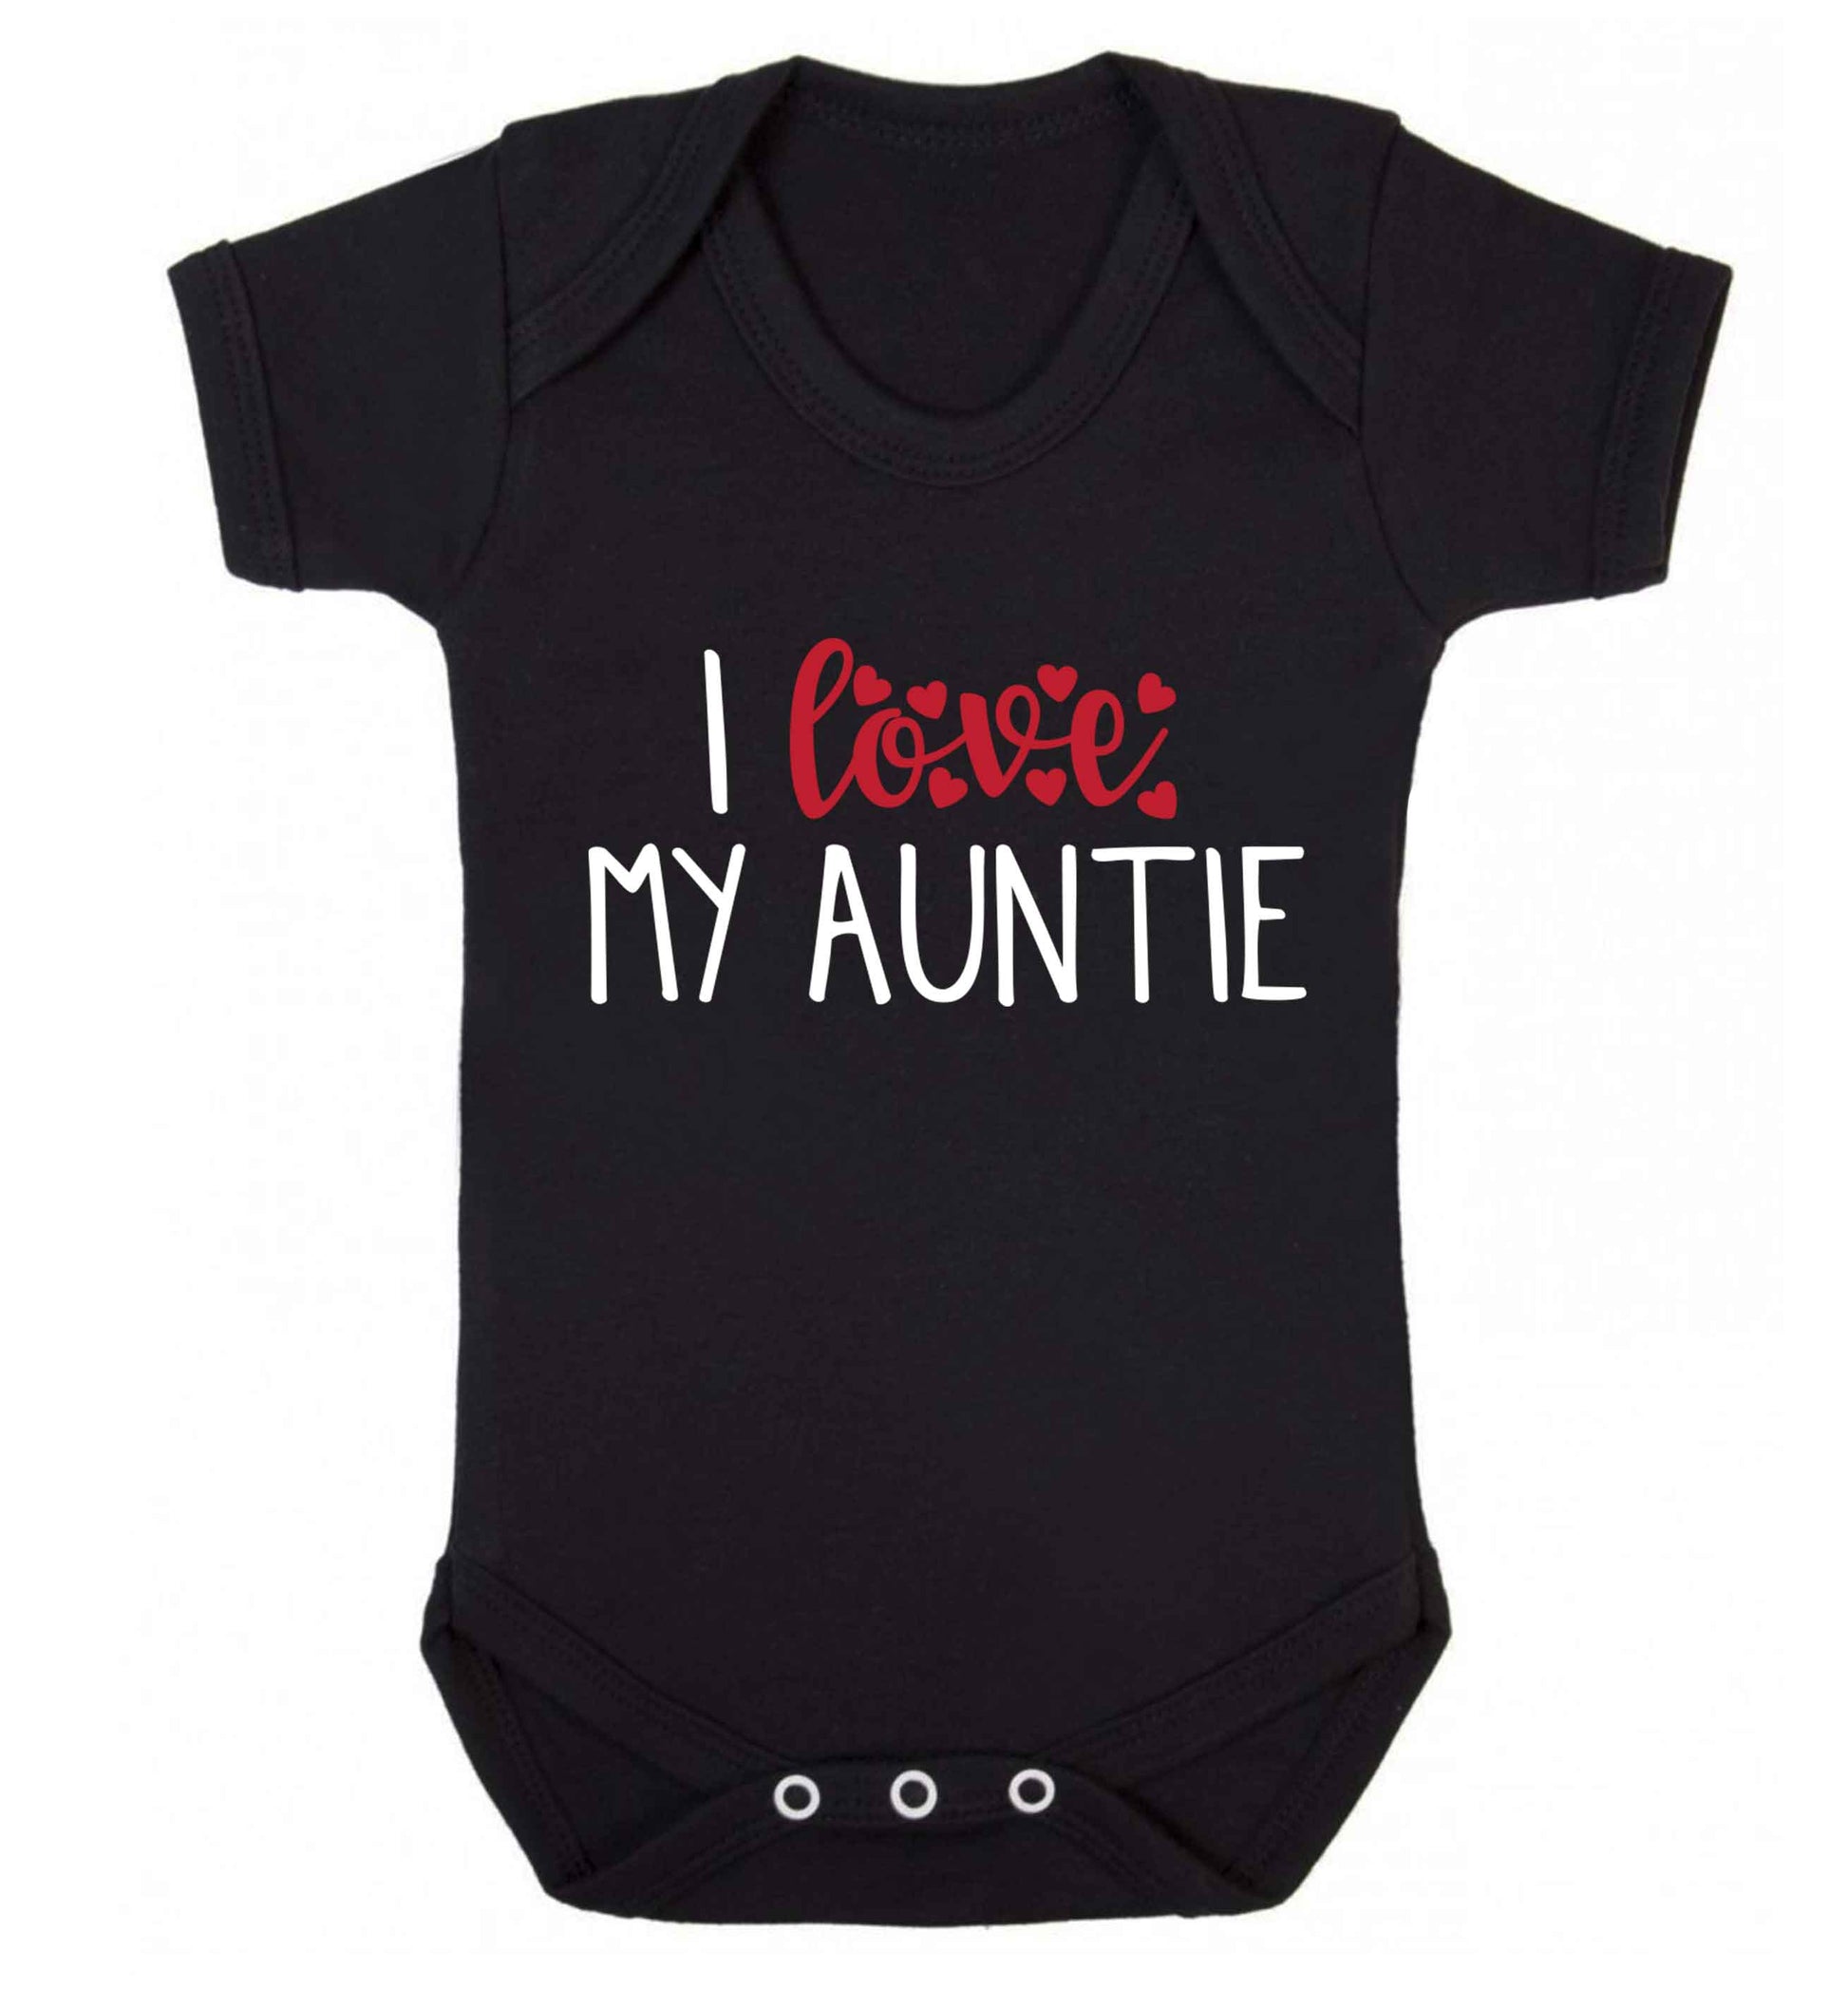 I love my auntie Baby Vest black 18-24 months